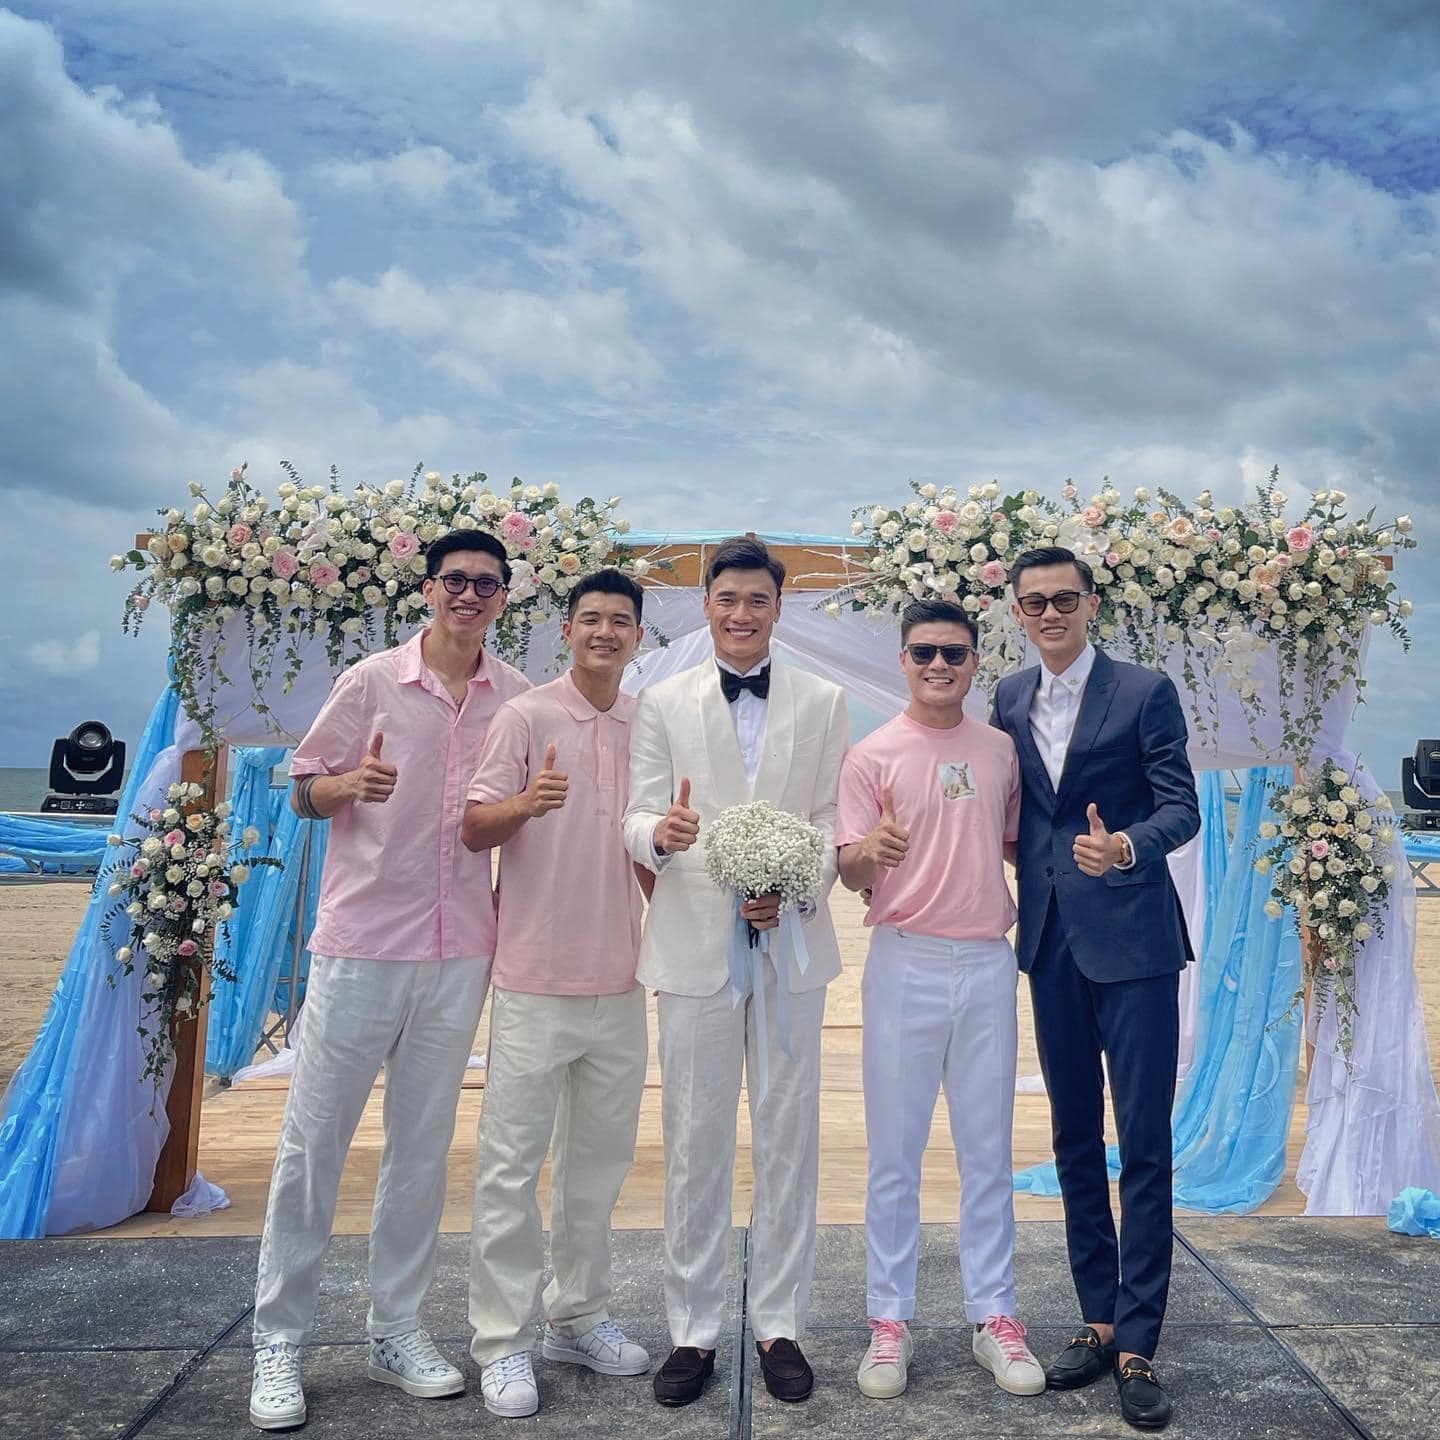 HOT: Thủ môn Bùi Tiến Dũng tổ chức đám cưới với bạn gái Tây, dàn tuyển thủ Việt Nam đều góp mặt chung vui - Ảnh 5